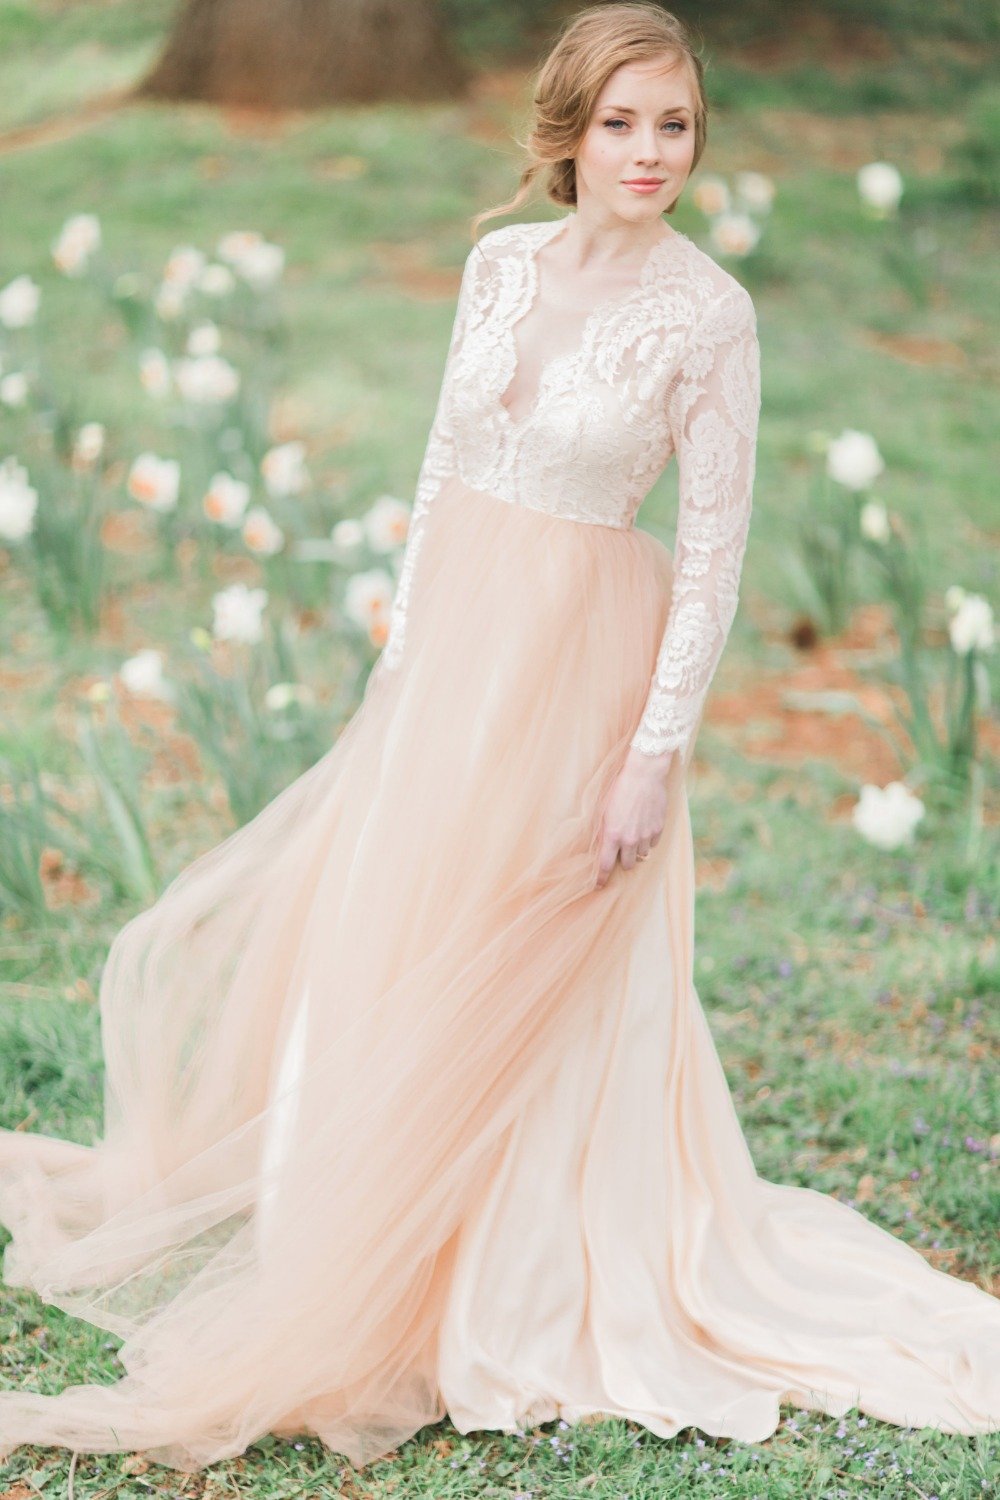 Blush wedding gown